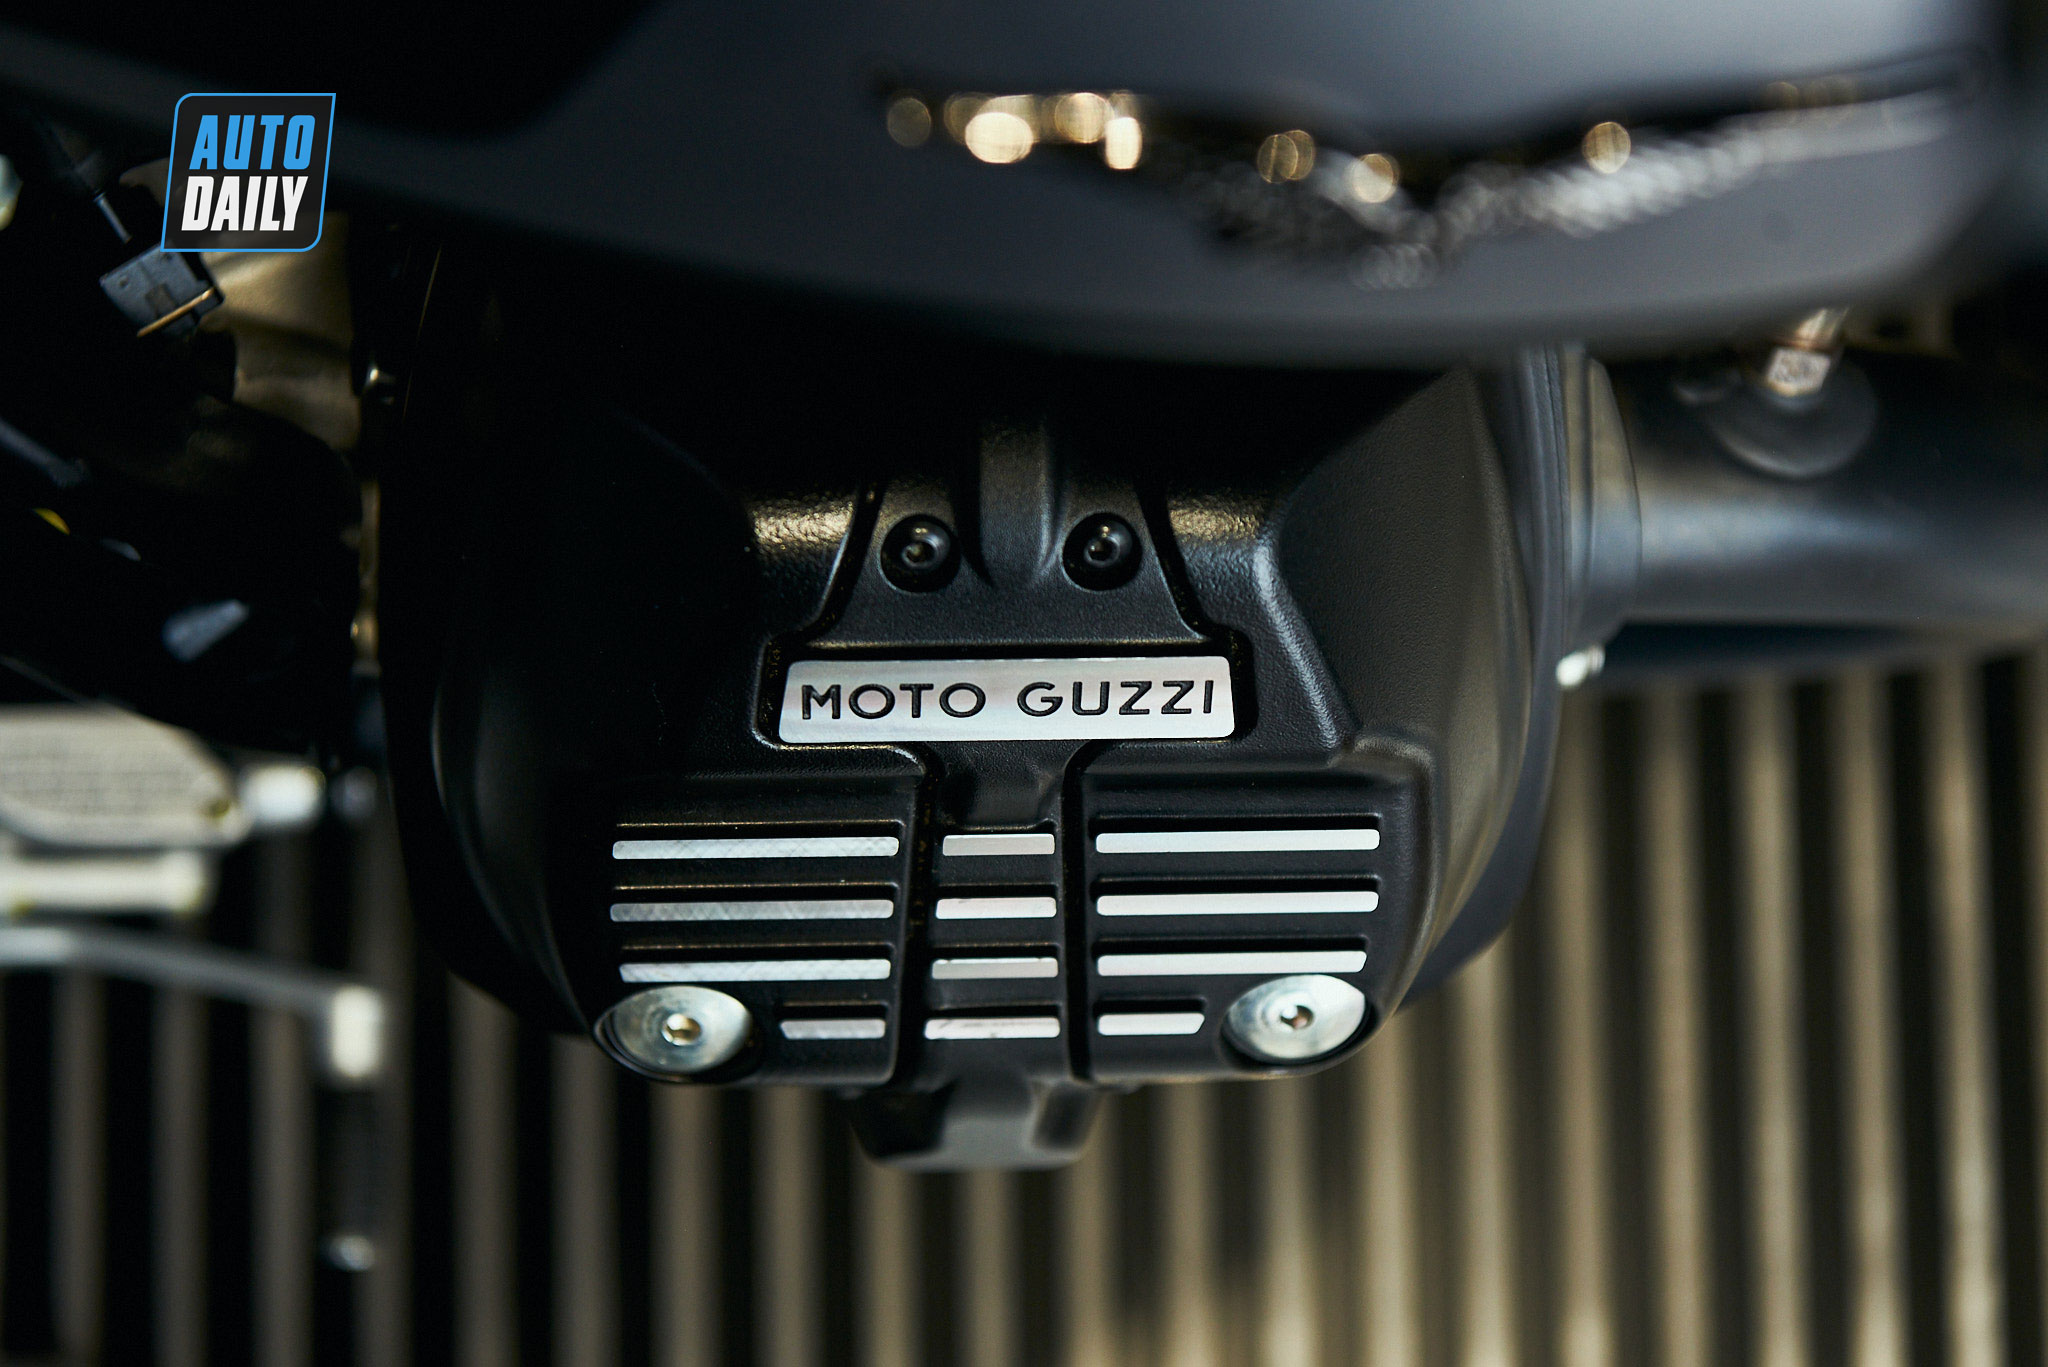 Chi tiết môtô cổ điển Moto Guzzi V9 Bobber giá từ 415 triệu đồng moto-guzzi-v9-bobber-09.jpg